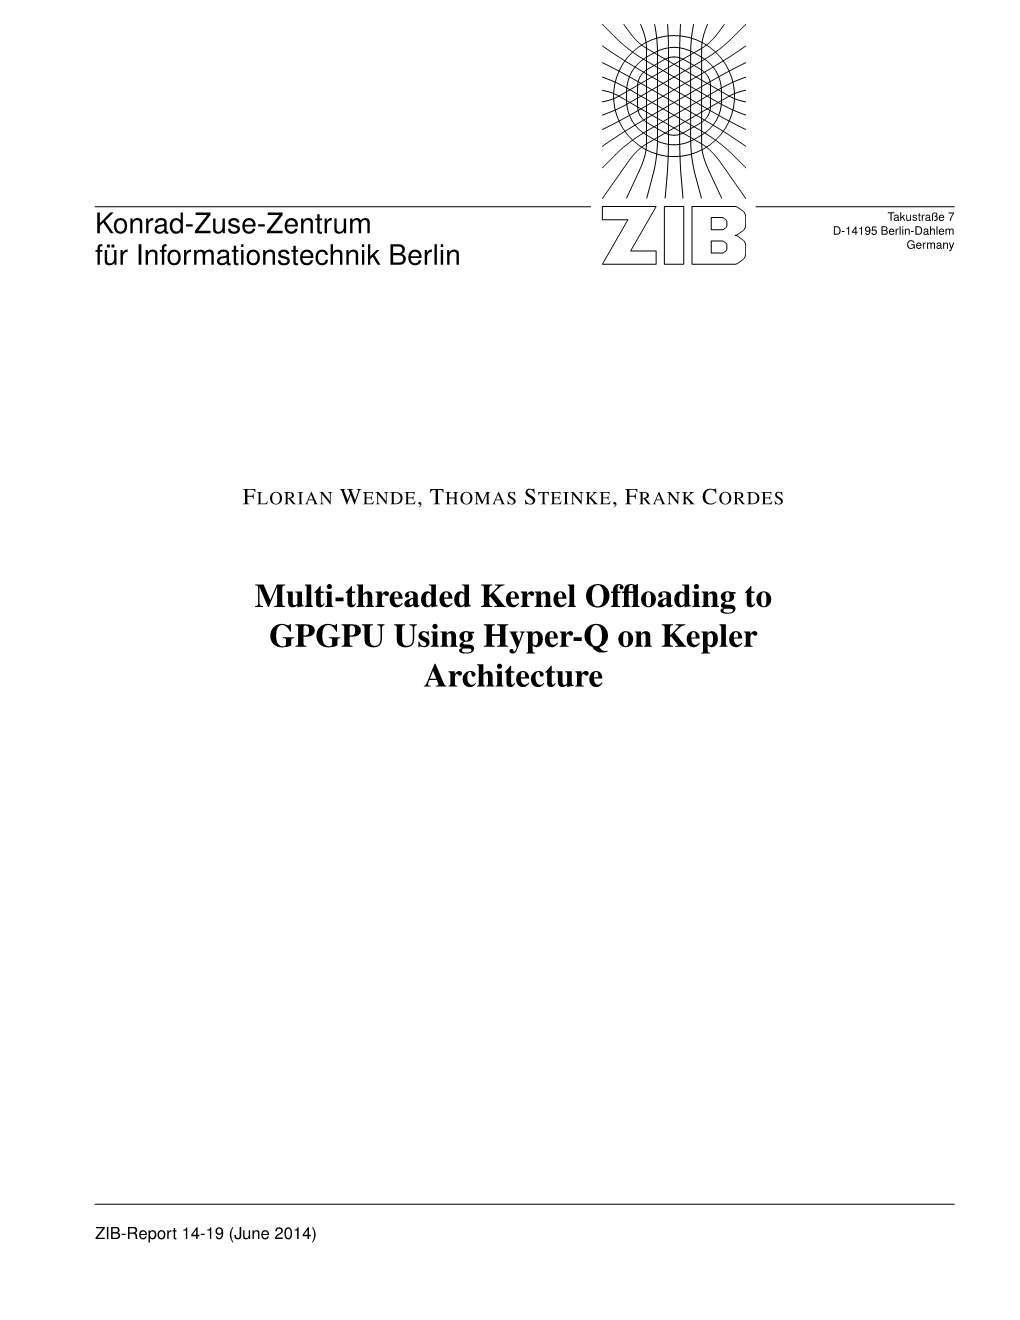 Multi-Threaded Kernel Offloading to GPGPU Using Hyper-Q on Kepler